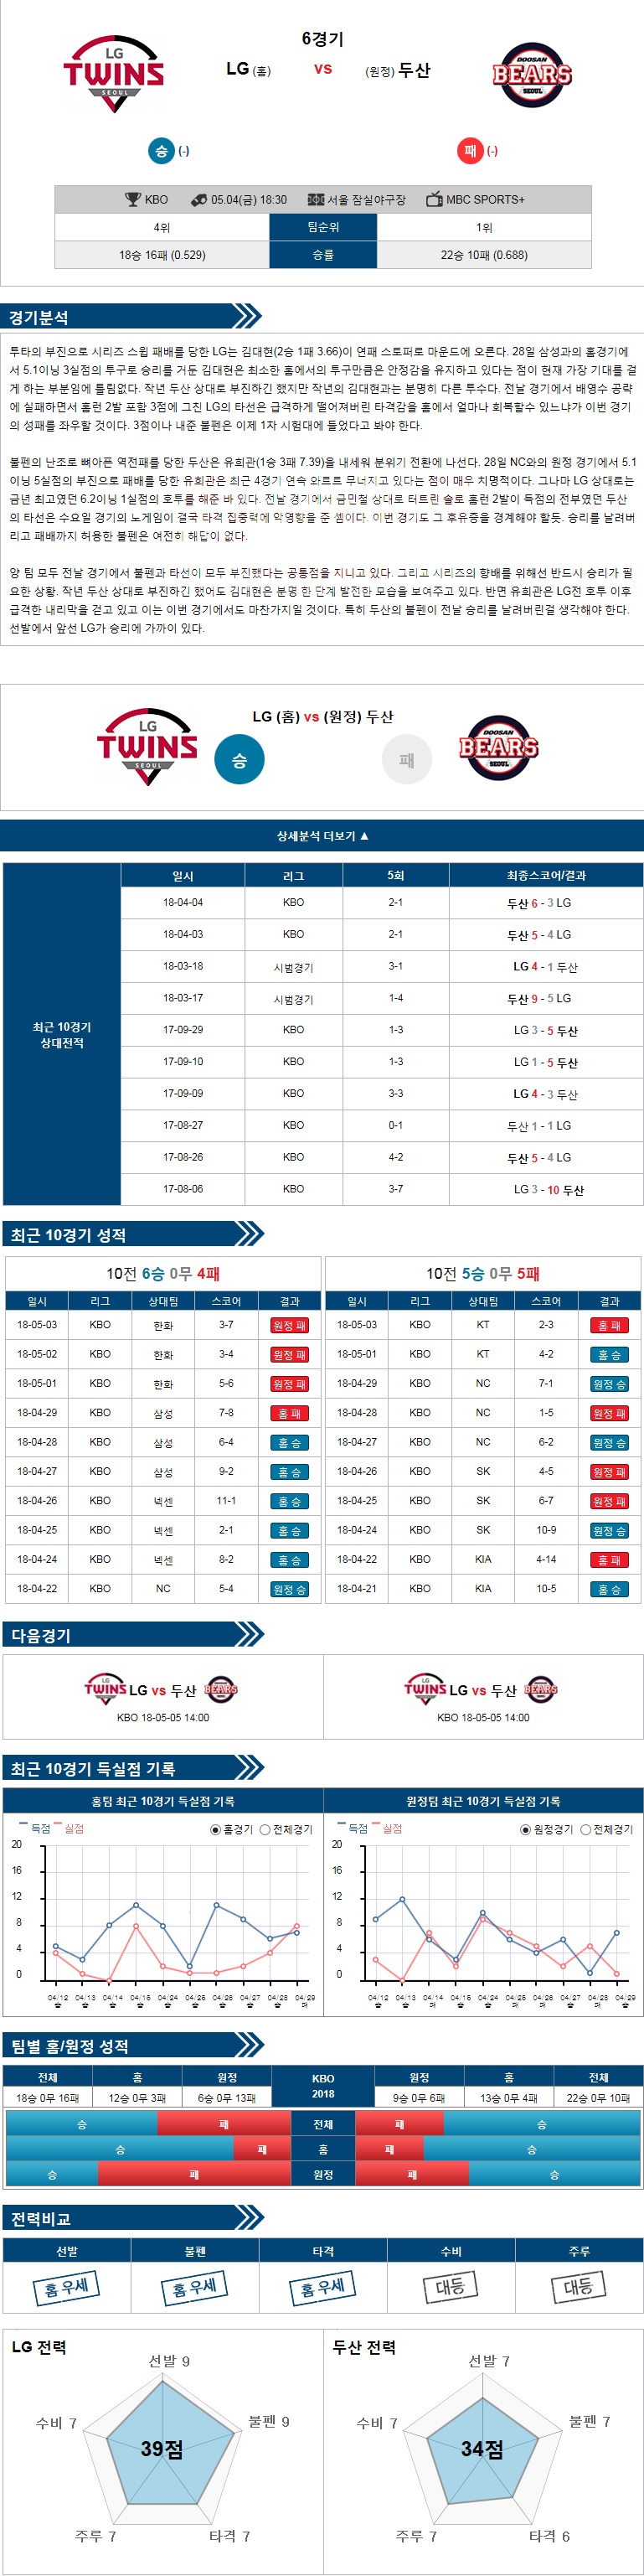 5-04 [KBO] 18:30 야구분석 LG vs 두산